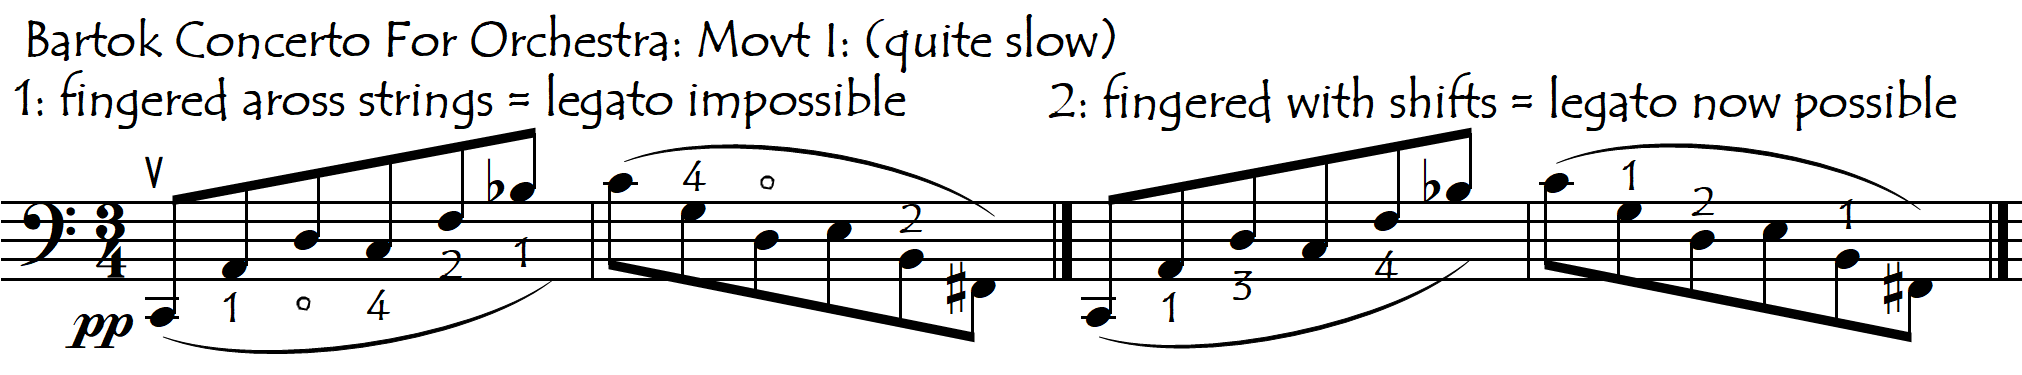 bartok conc legato shift or legato across